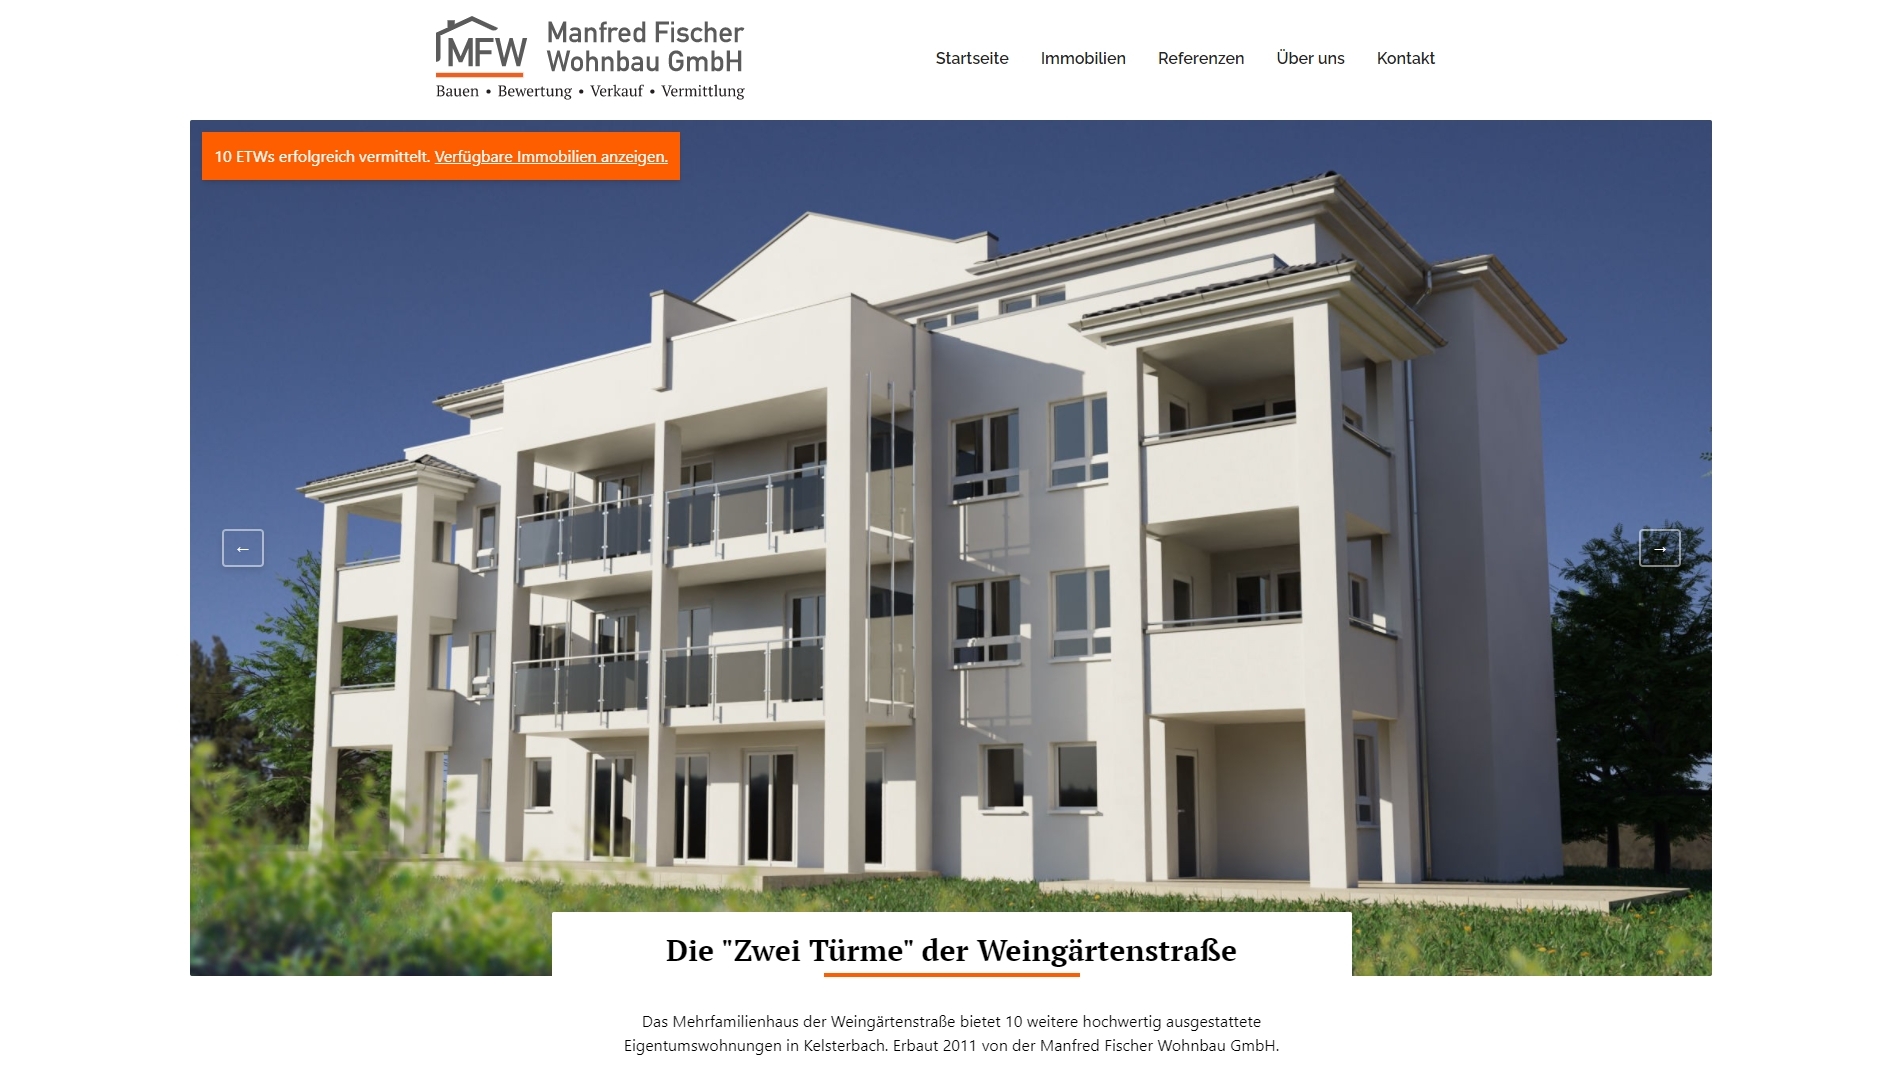 Referenzobjekt der Manfred Fischer Wohnbau GmbH